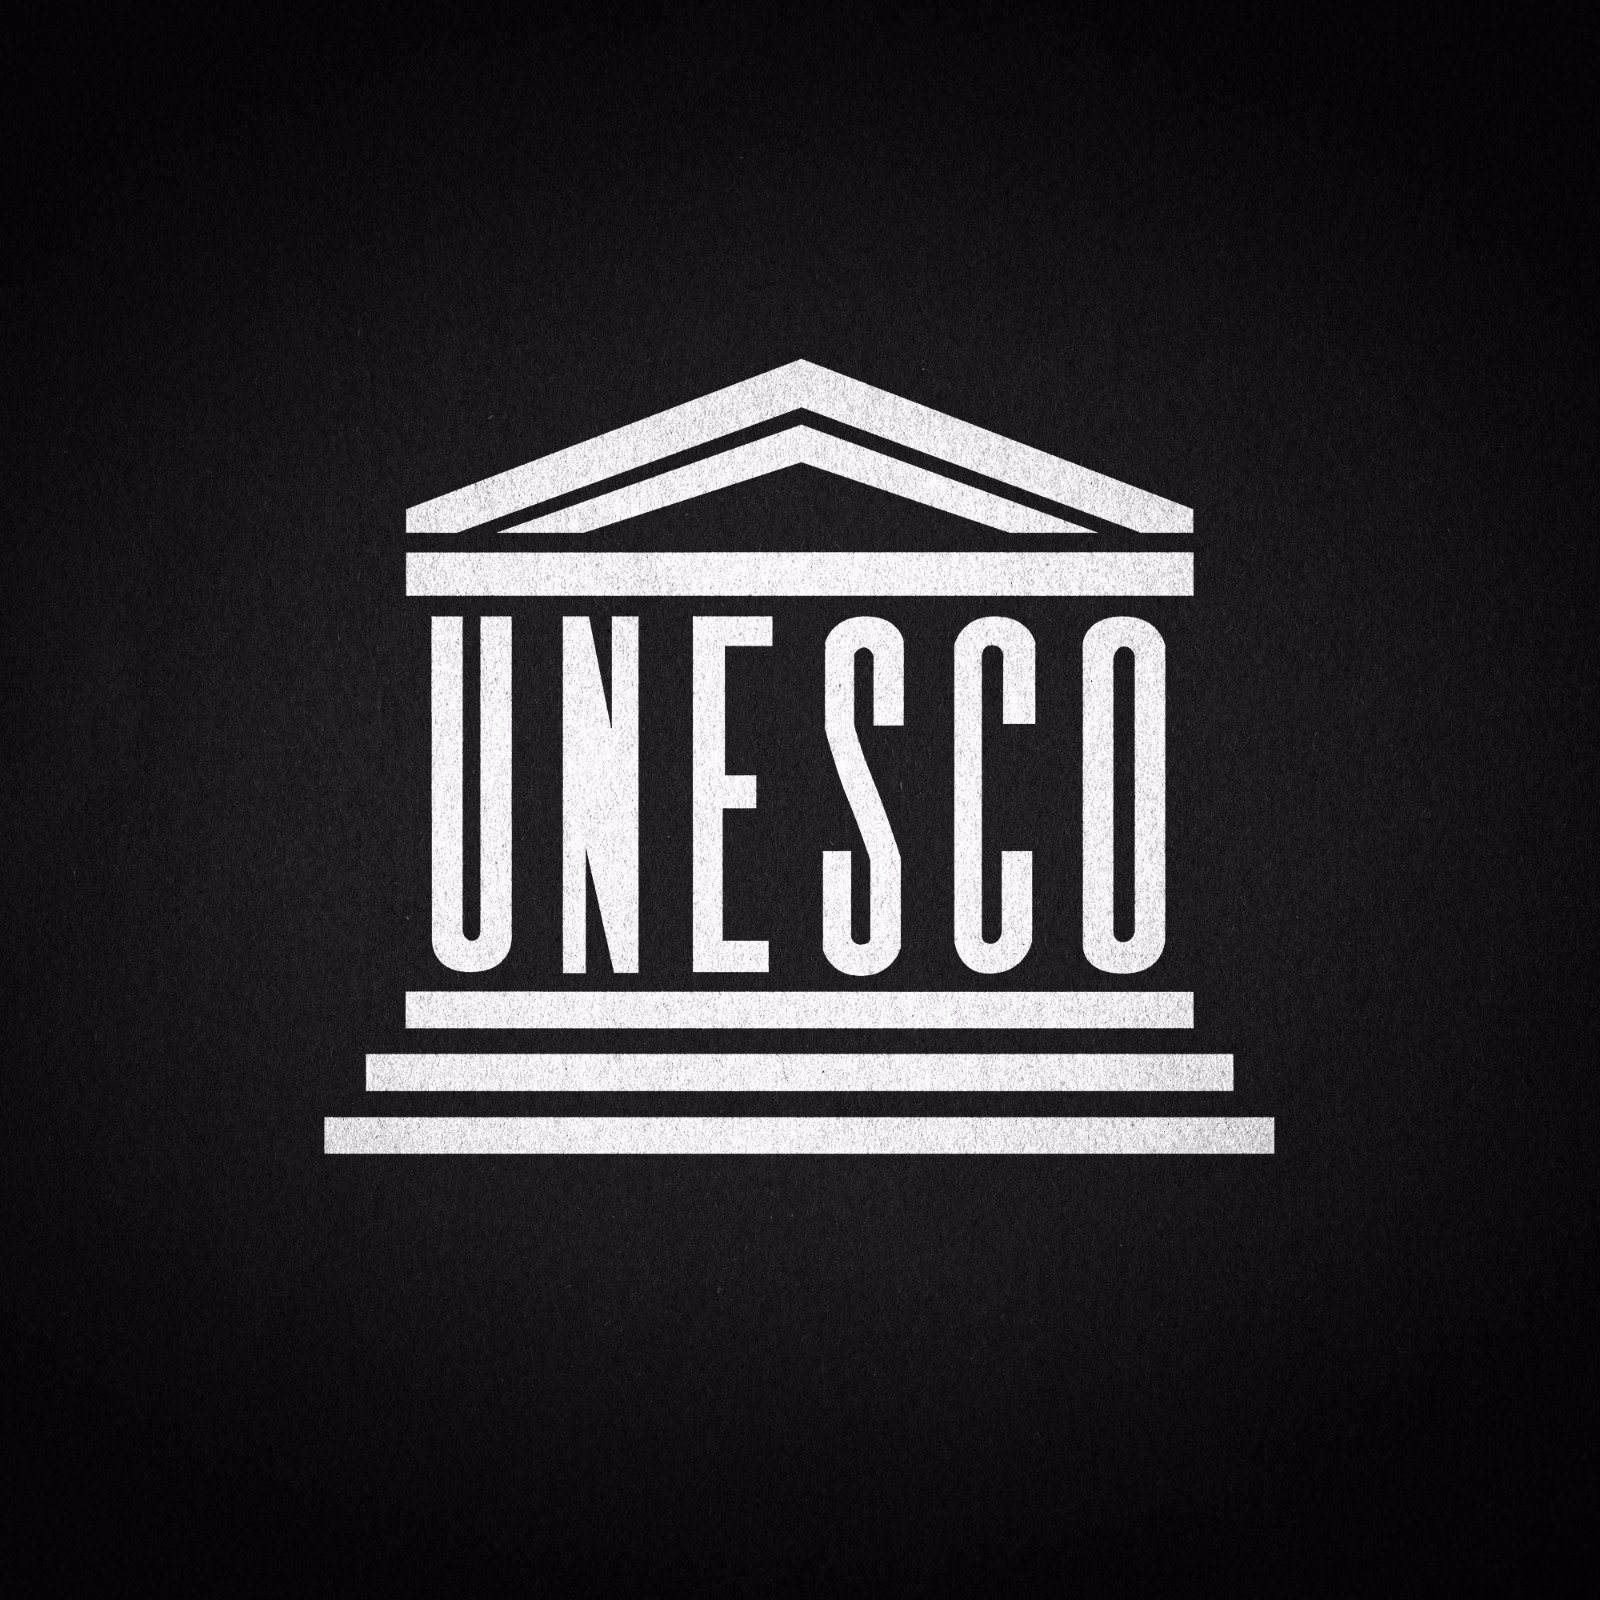 Unesco site. ЮНЕСКО. ЮНЕСКО эмблема. Символ ЮНЕСКО. ЮНЕСКО картинки.